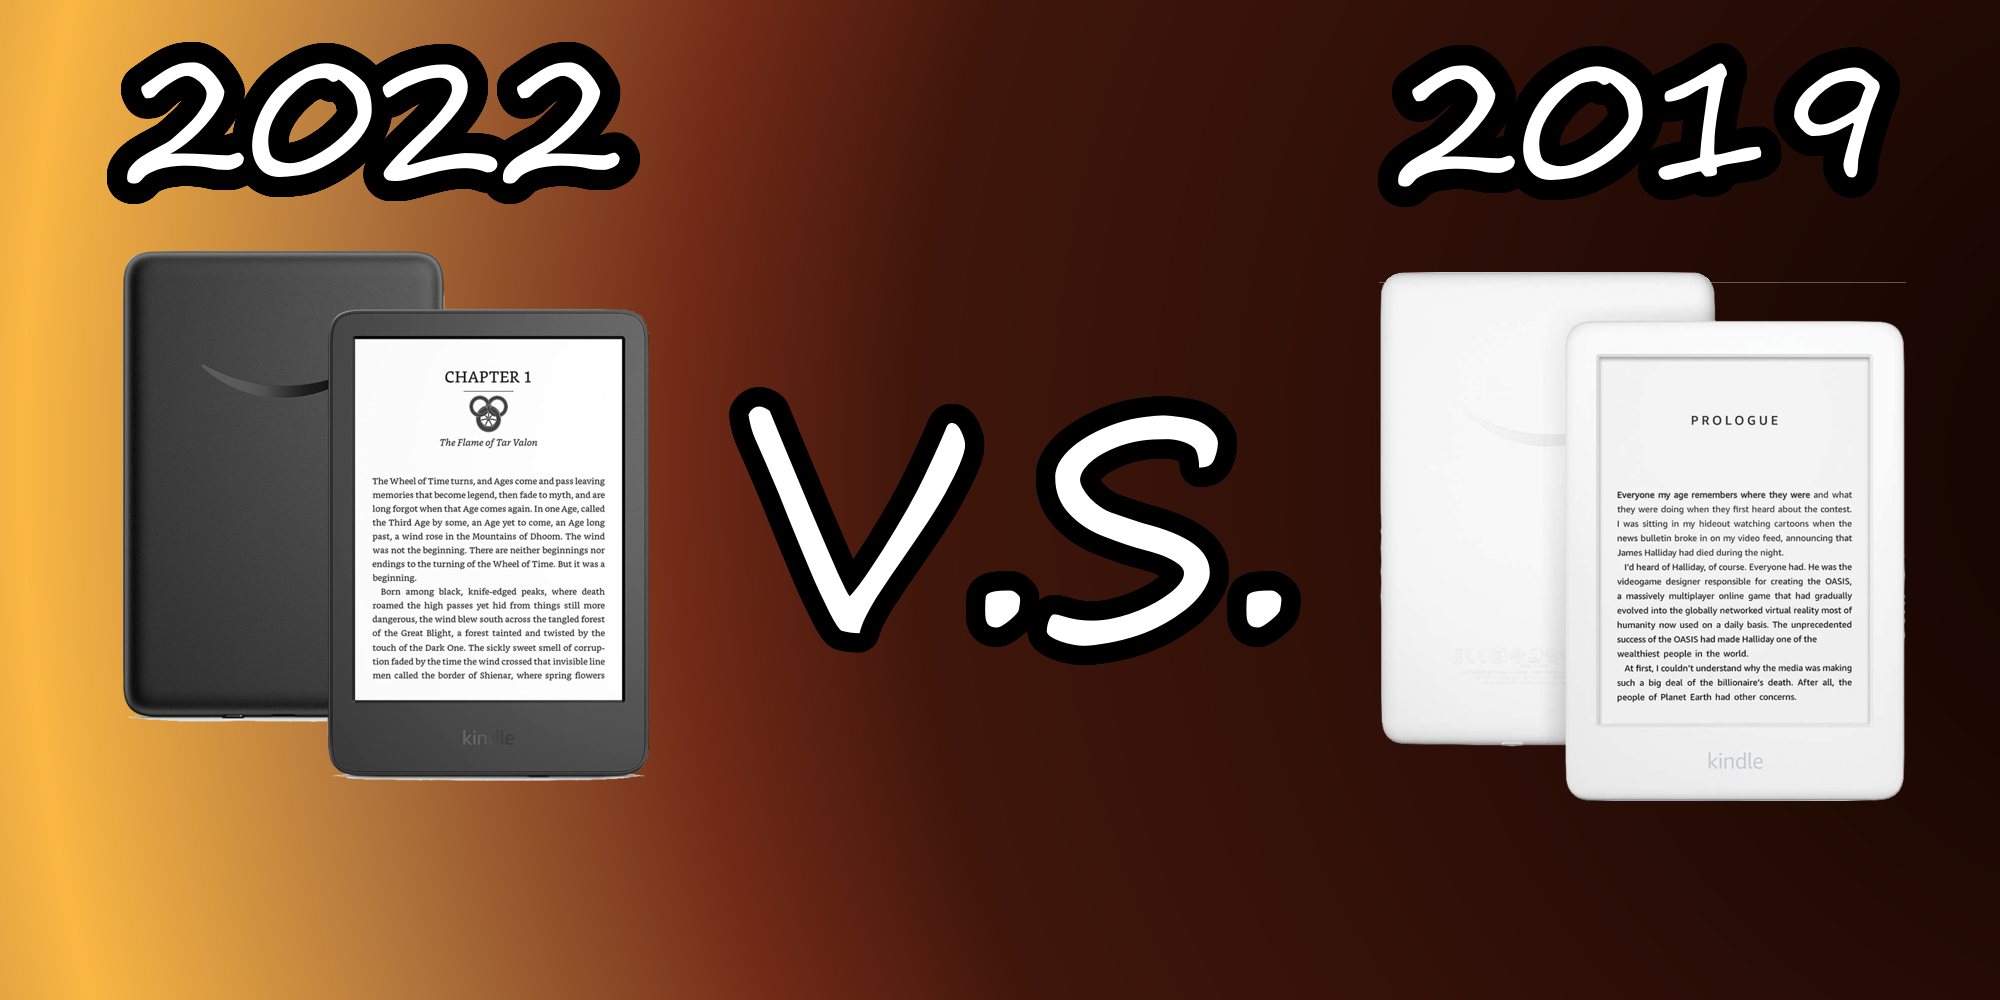 Kindle 2022 vs Kindle 2019